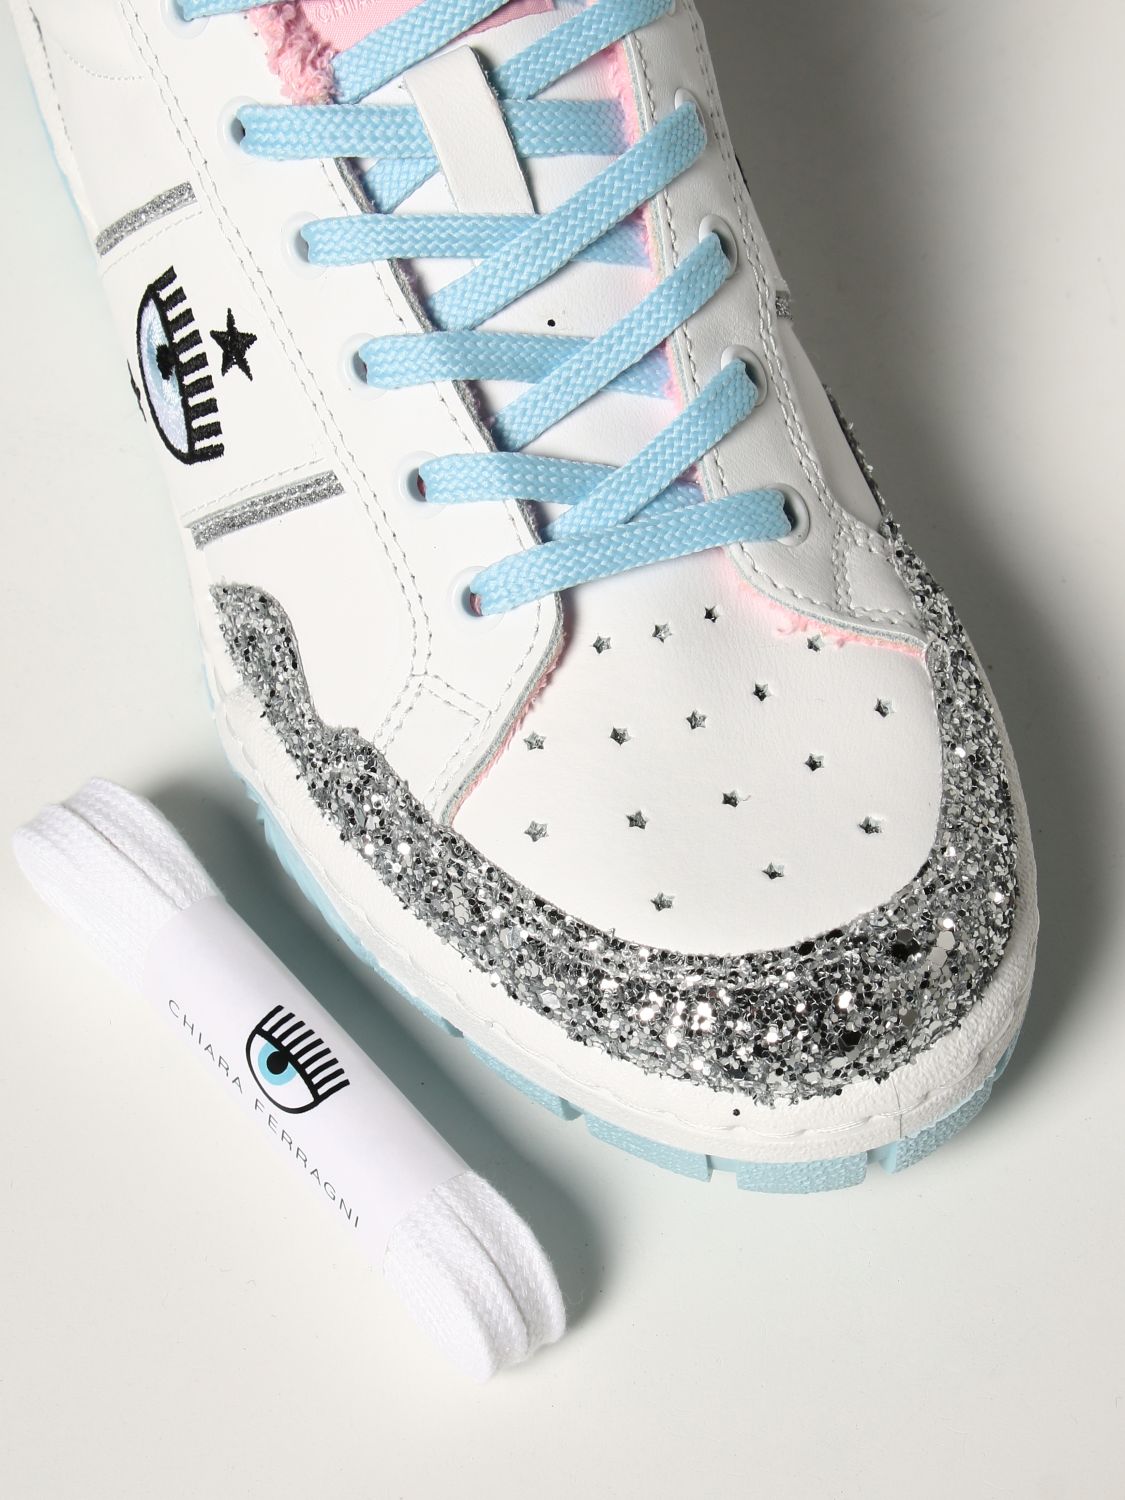 Schoenen Sneakers Sneakers met veters Chiara Ferragni Sneakers met veters zilver glitter-achtig 